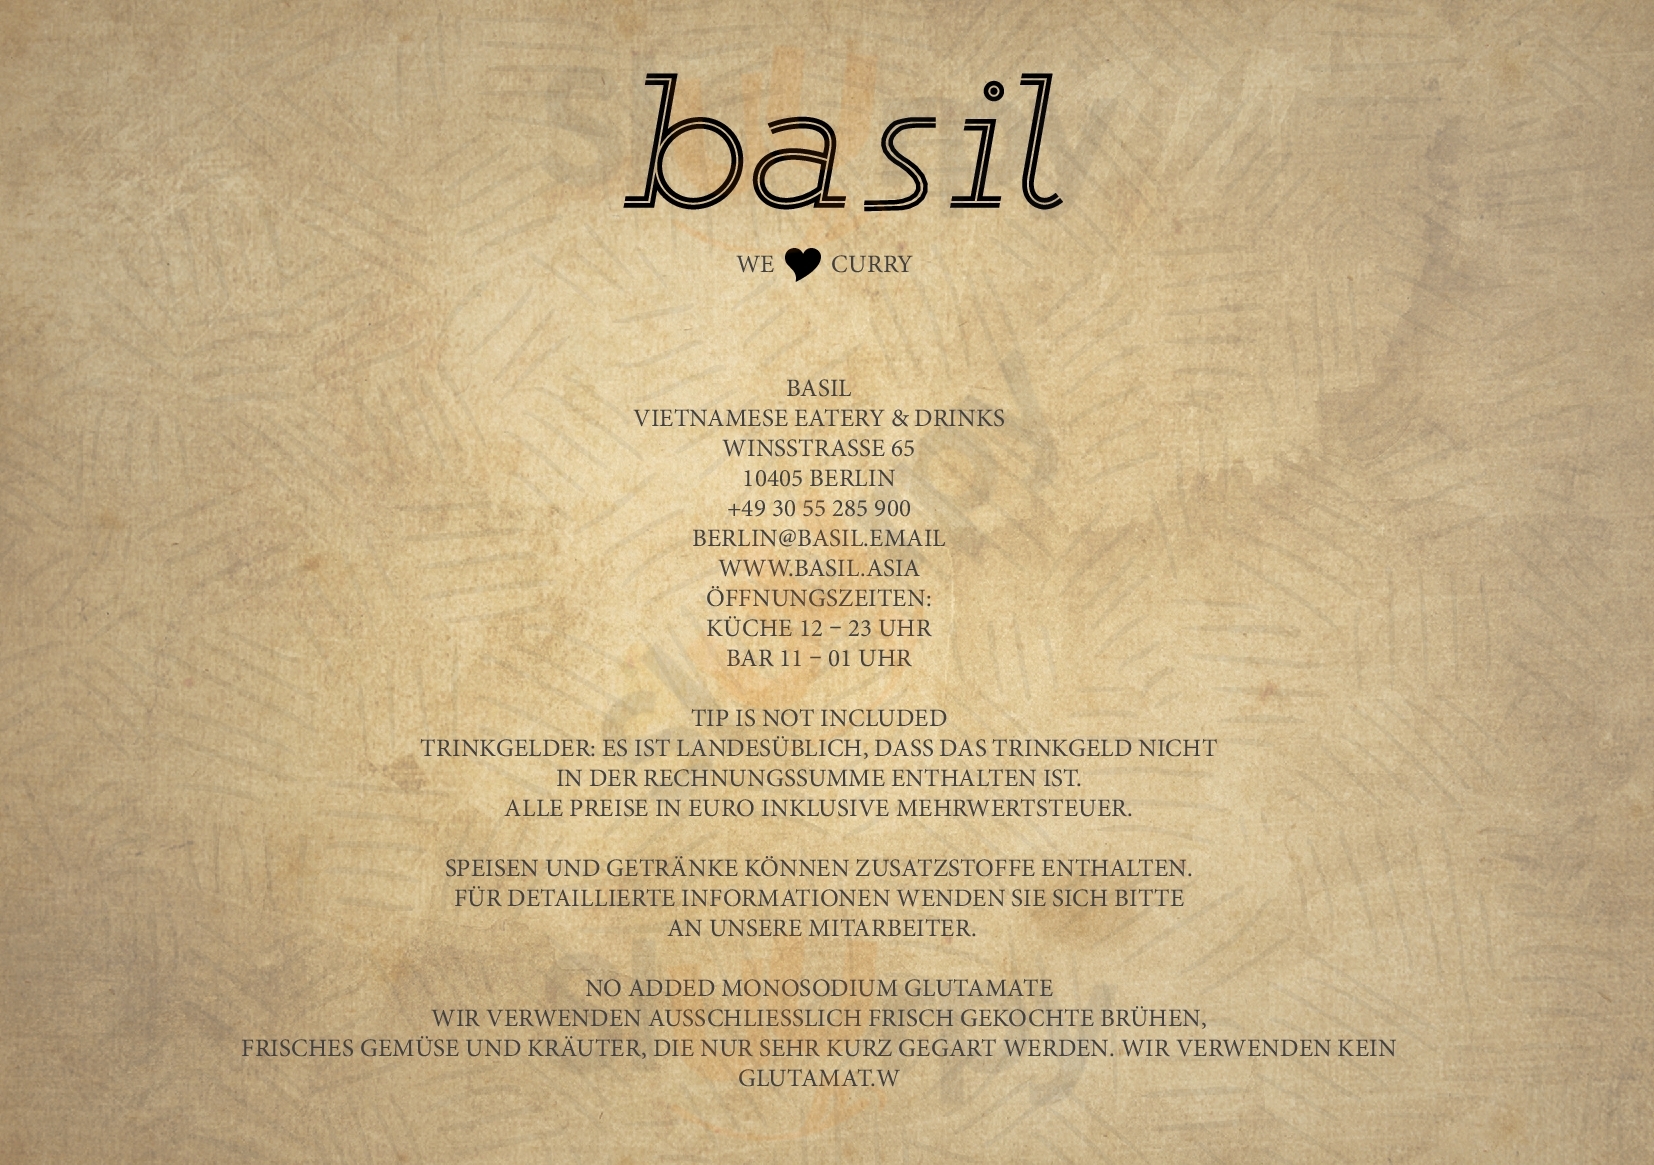 Basil - Vietnamese Eatery And Bar Berlin Menu - 1